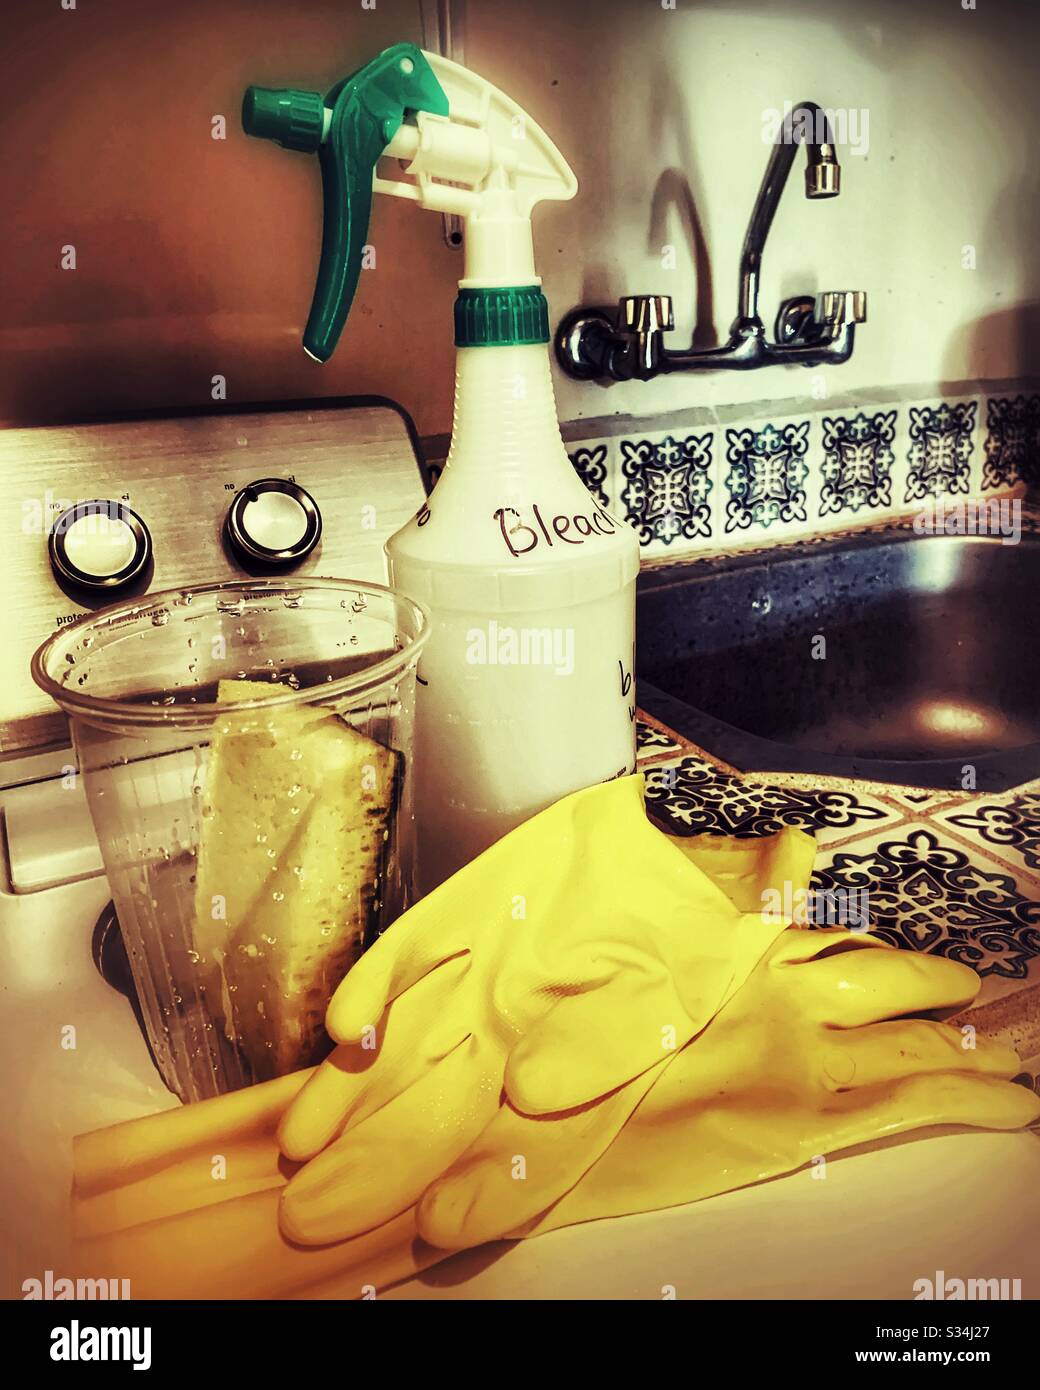 Una bottiglia spray con candeggina, un paio di guanti in gomma e una spugna fanno parte degli strumenti di disinfezione presenti in questa lavanderia. Foto Stock